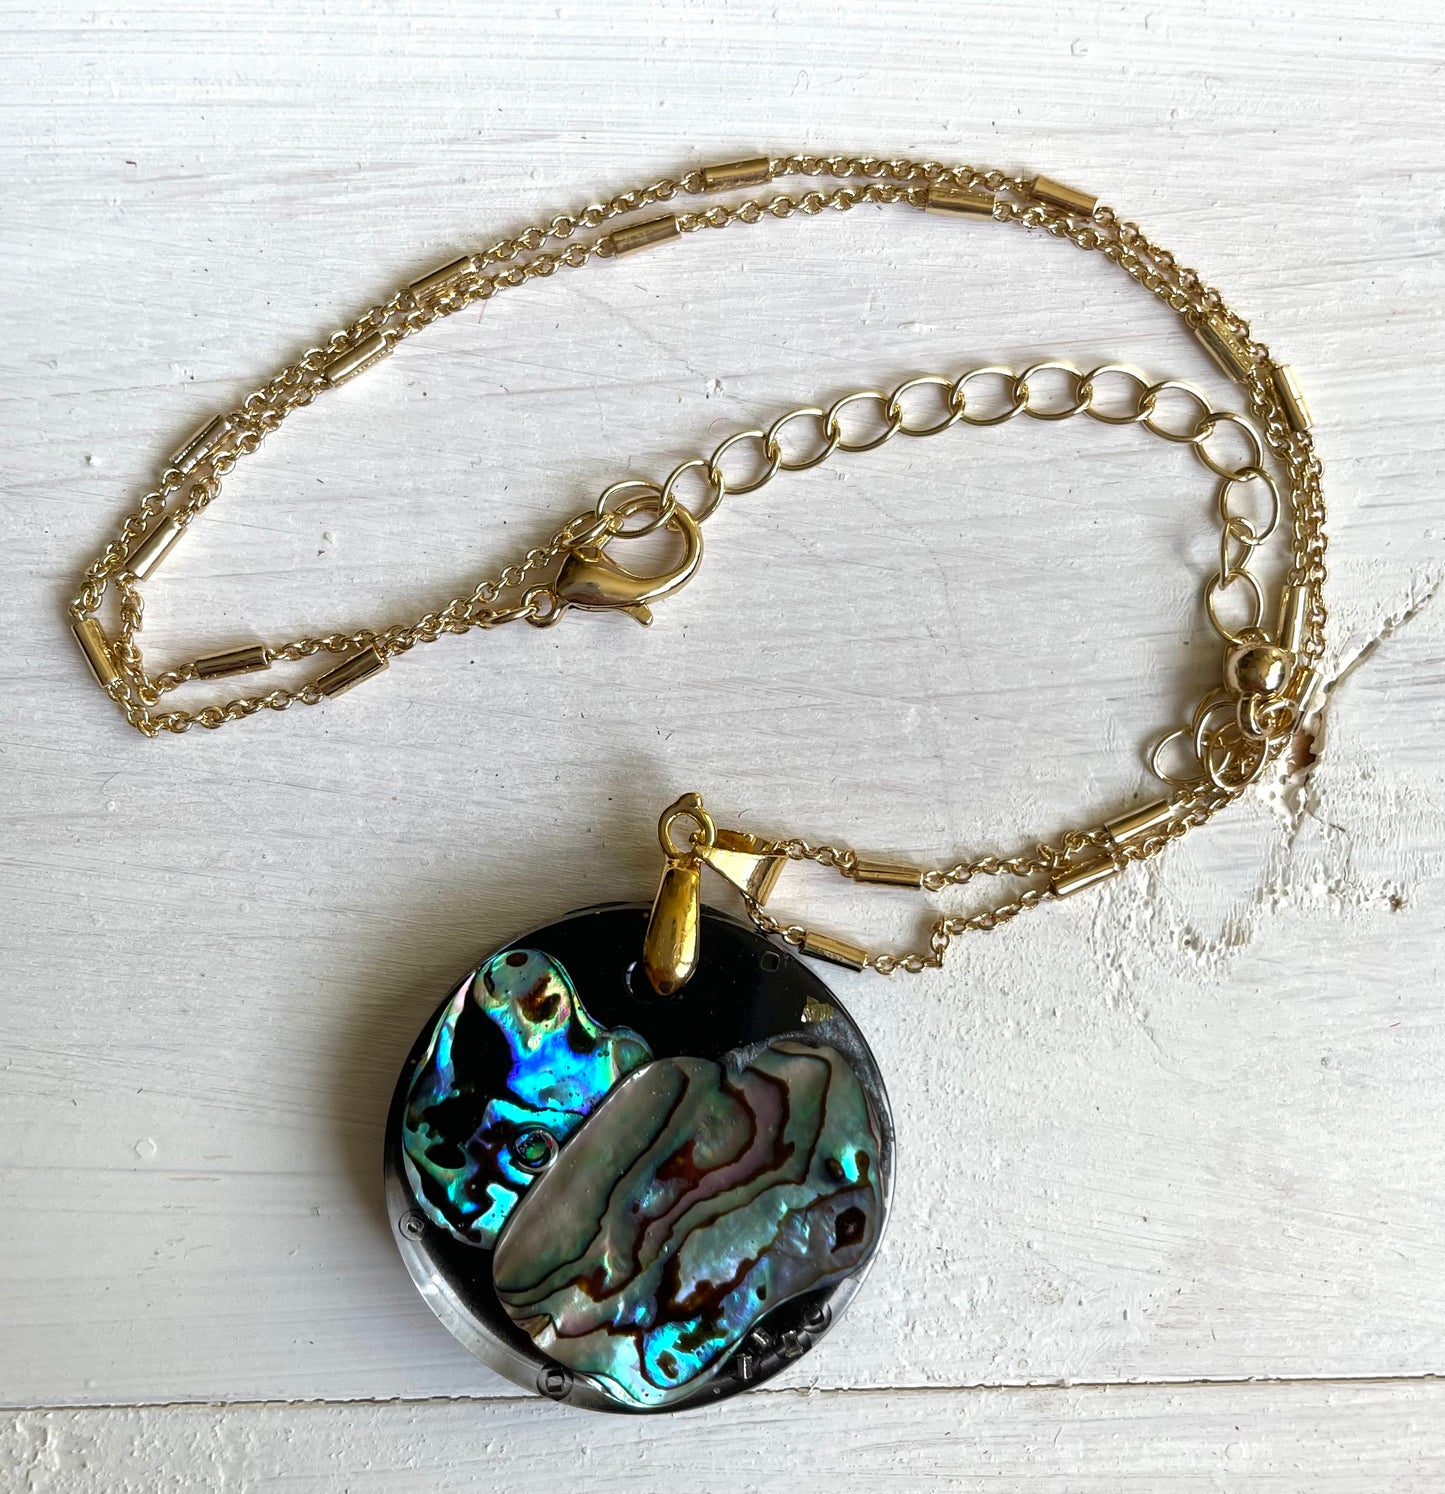 Large round abalone pendant